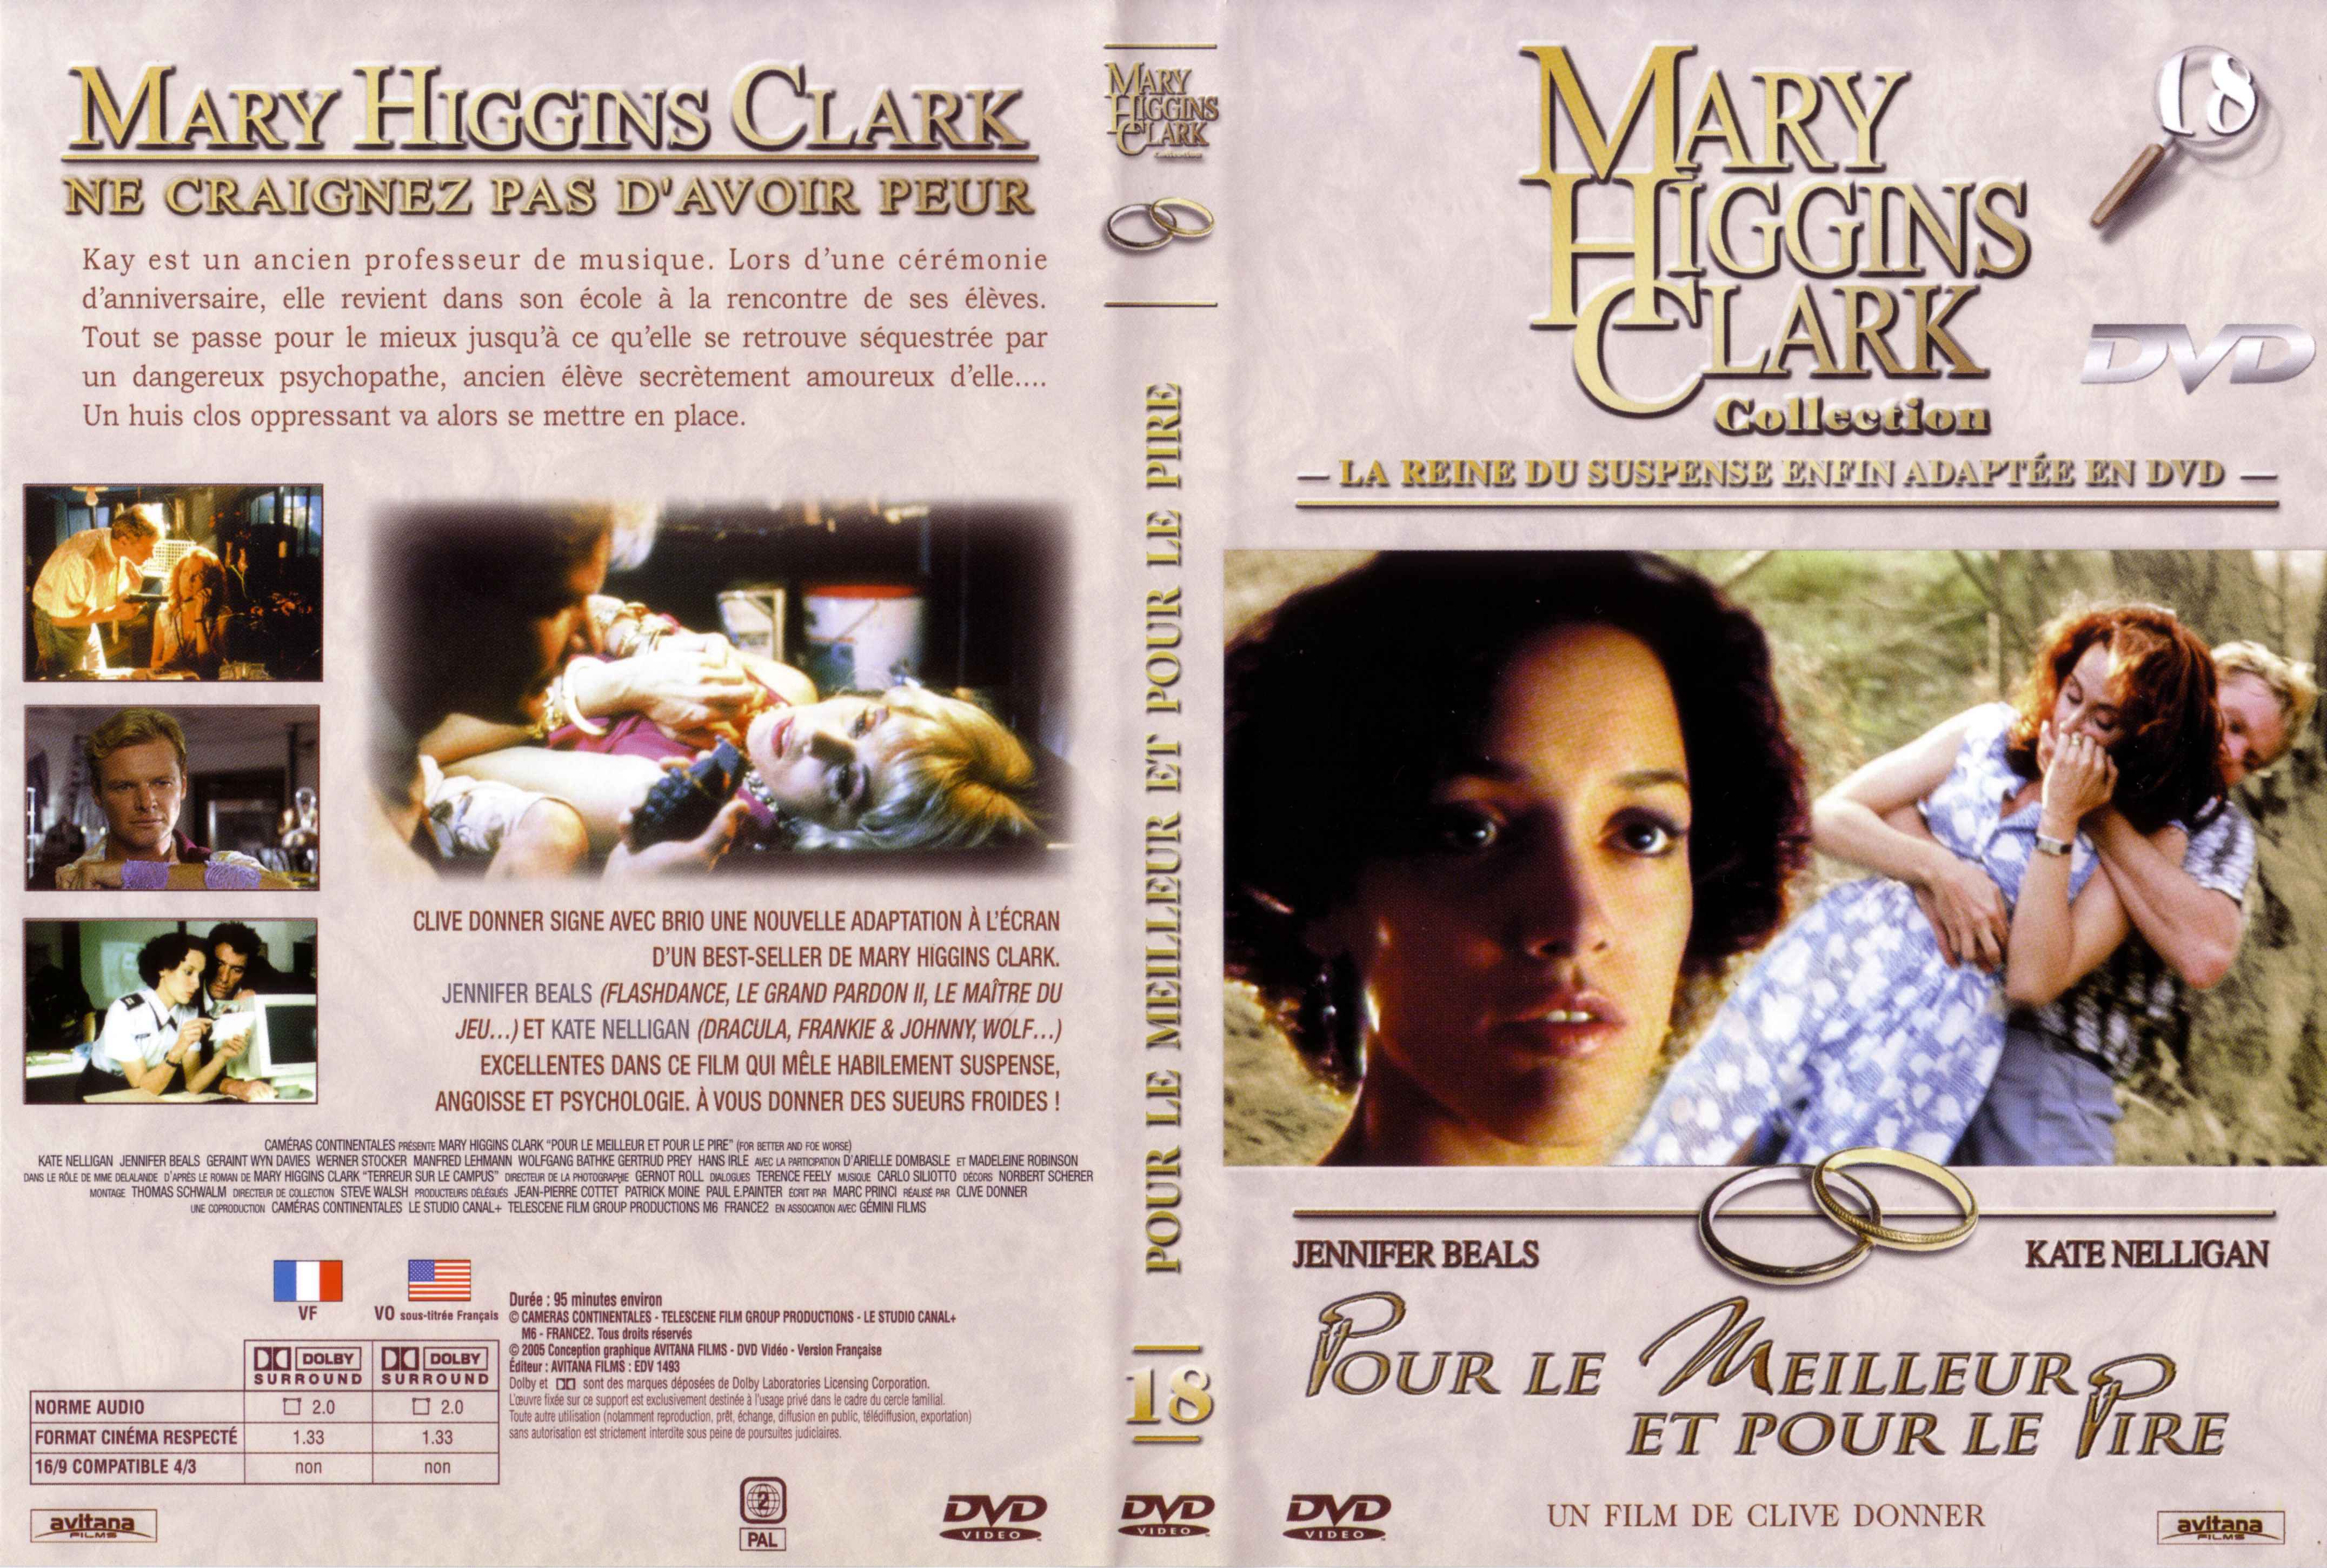 Jaquette DVD de Mary Higgins Clark vol 18 - Pour le meilleur et pour le pire - Cinéma ...